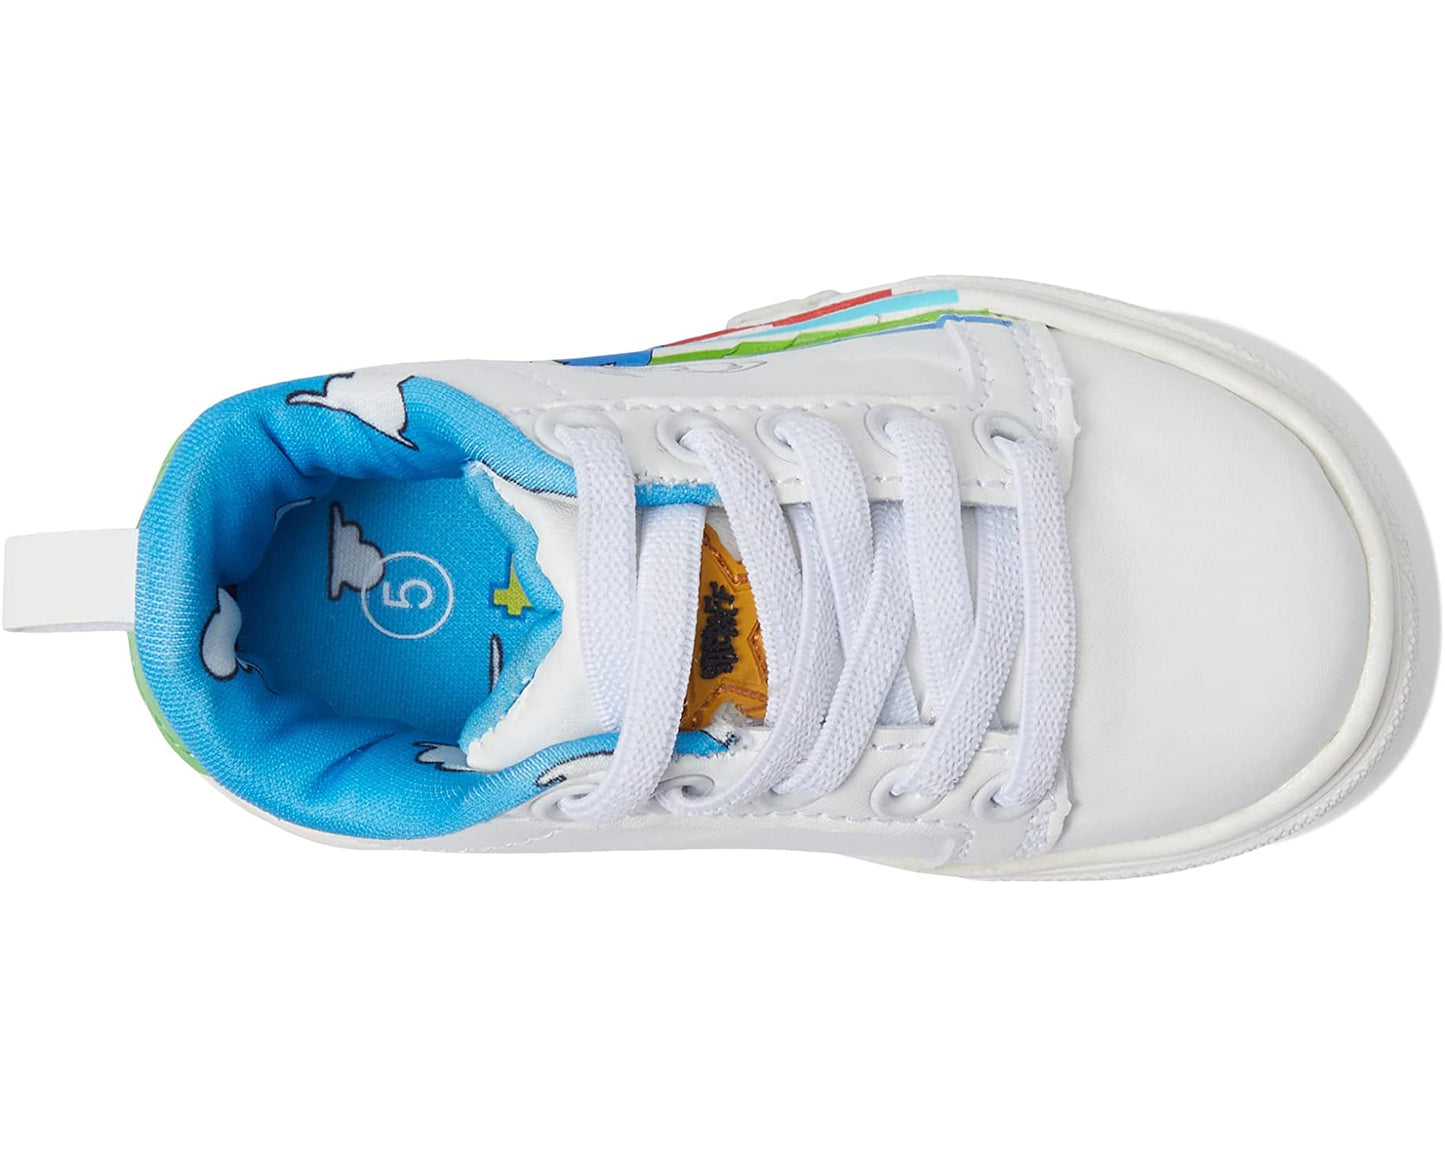 Pixar Toy Story Low Top Sneakers